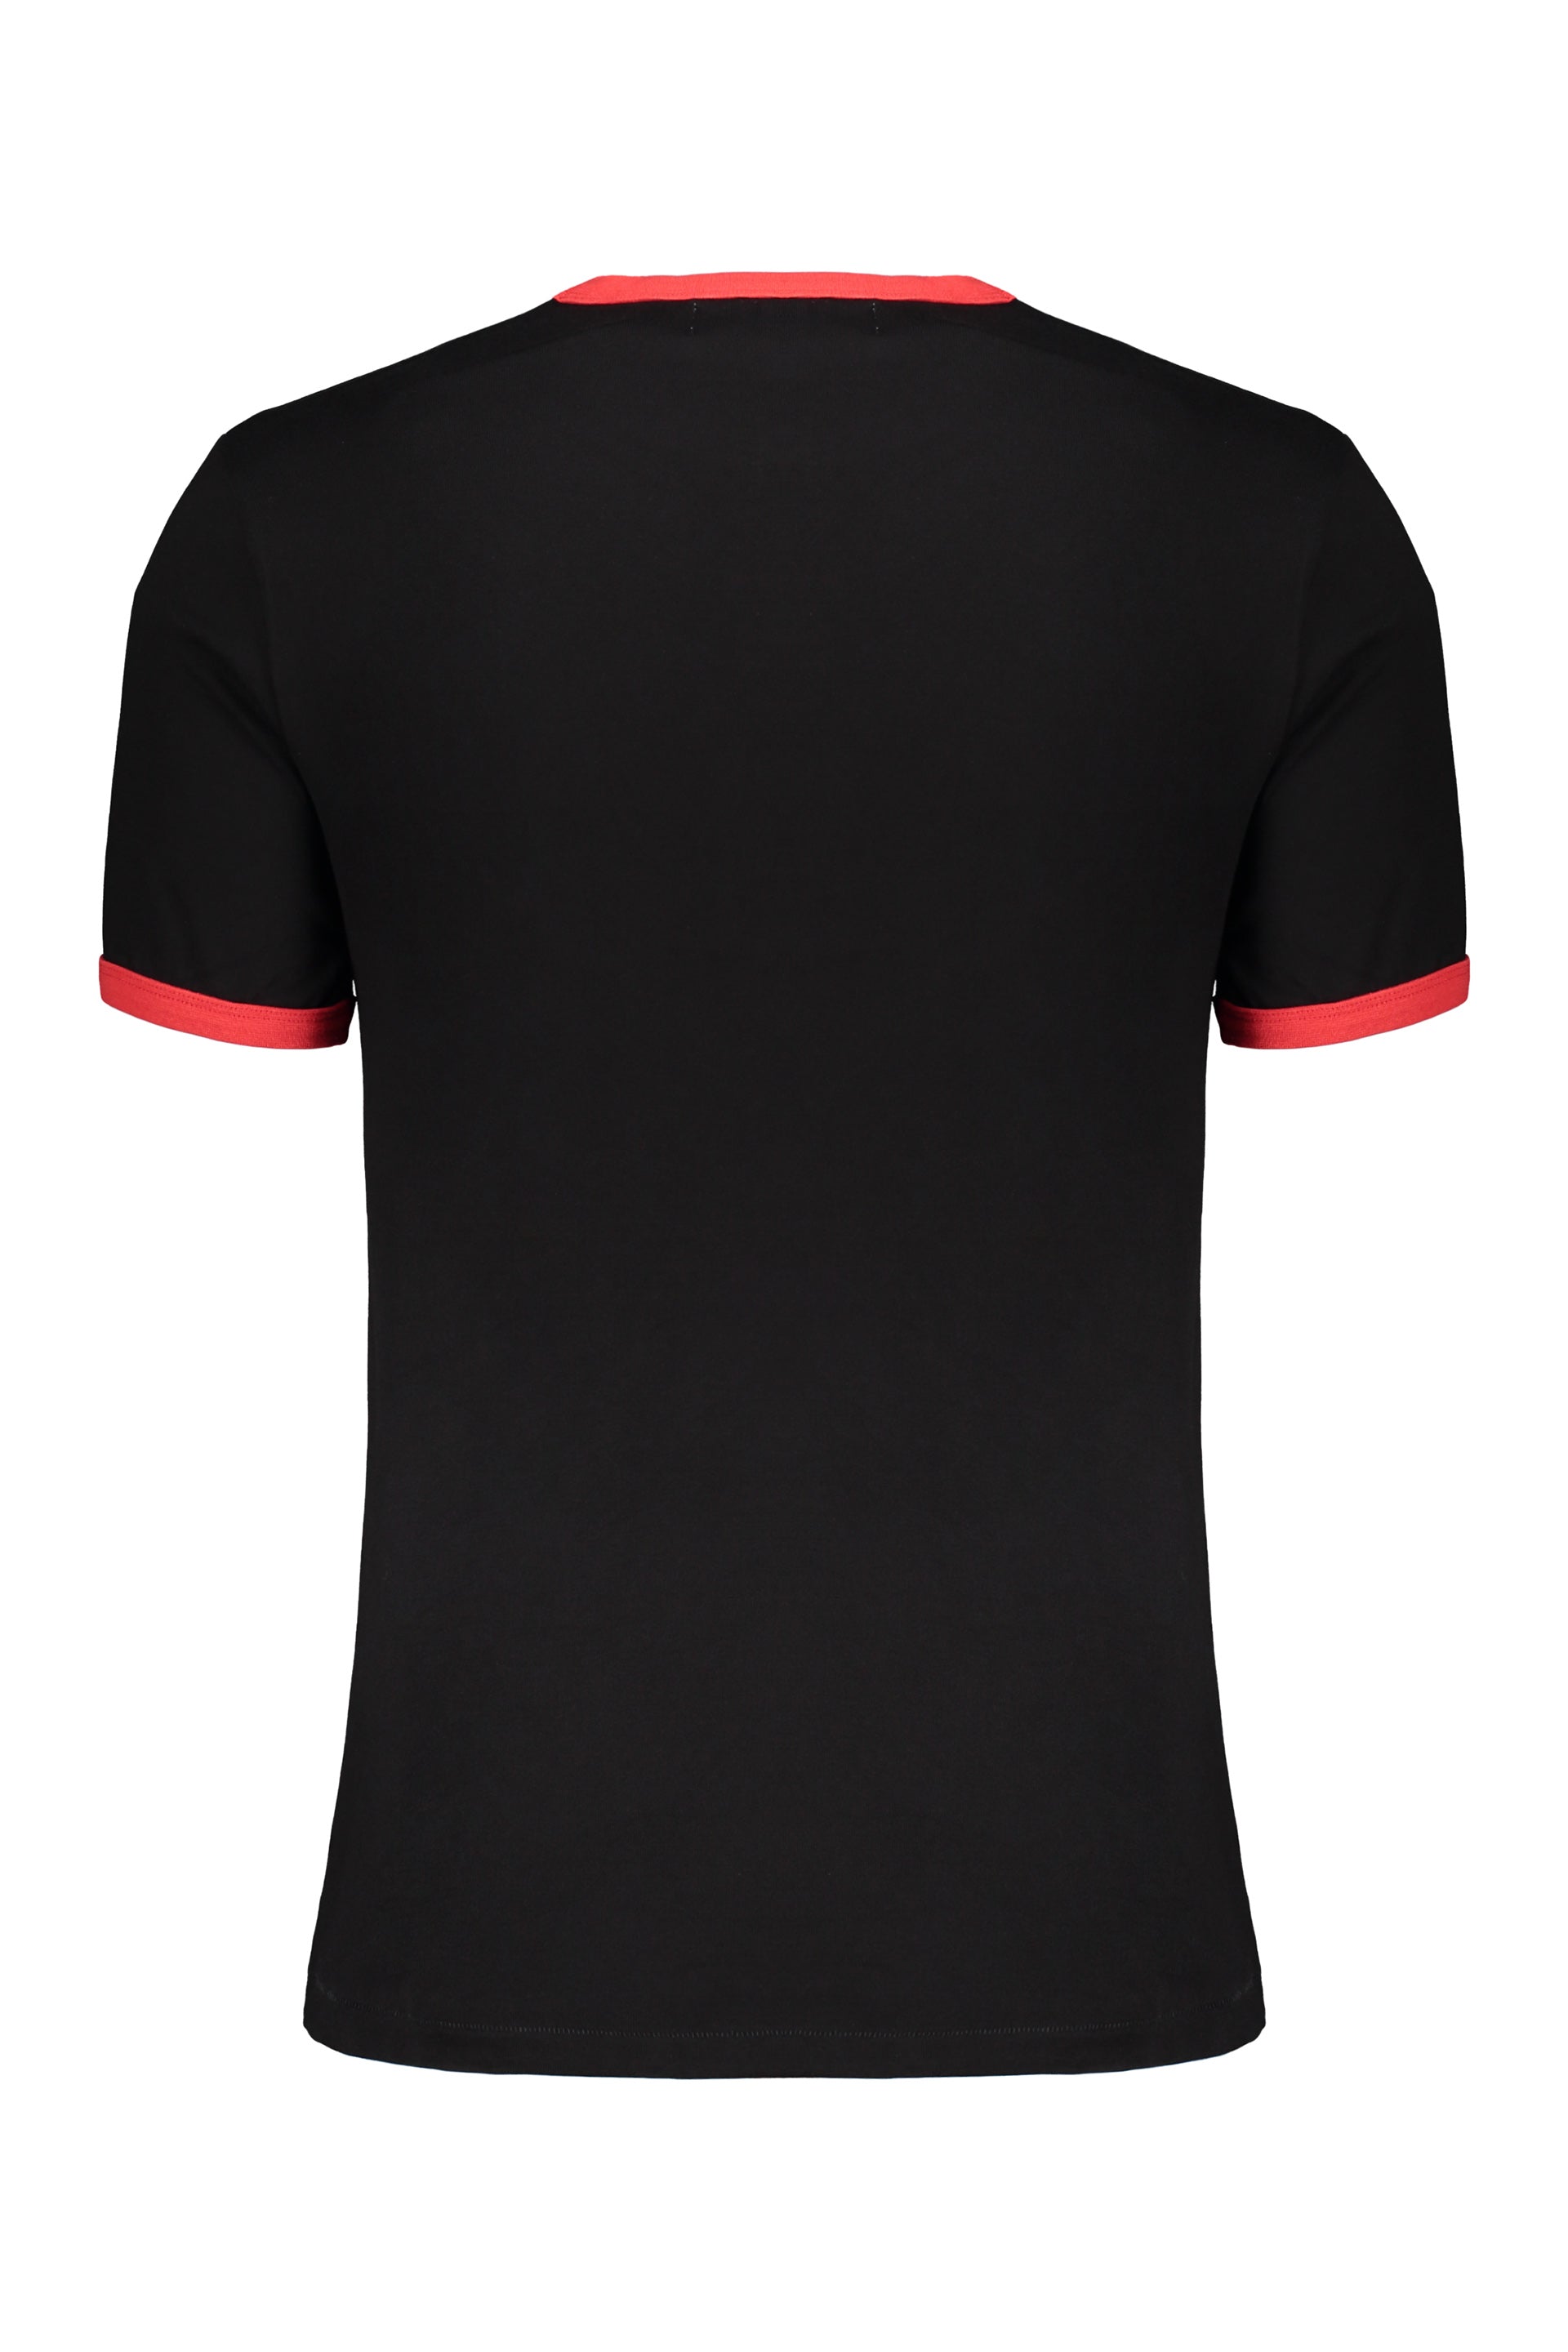 AMBUSH-OUTLET-SALE-Cotton-T-shirt-Shirts-ARCHIVE-COLLECTION-2_40e31bd6-5806-489f-ad22-116d58c960b5.jpg